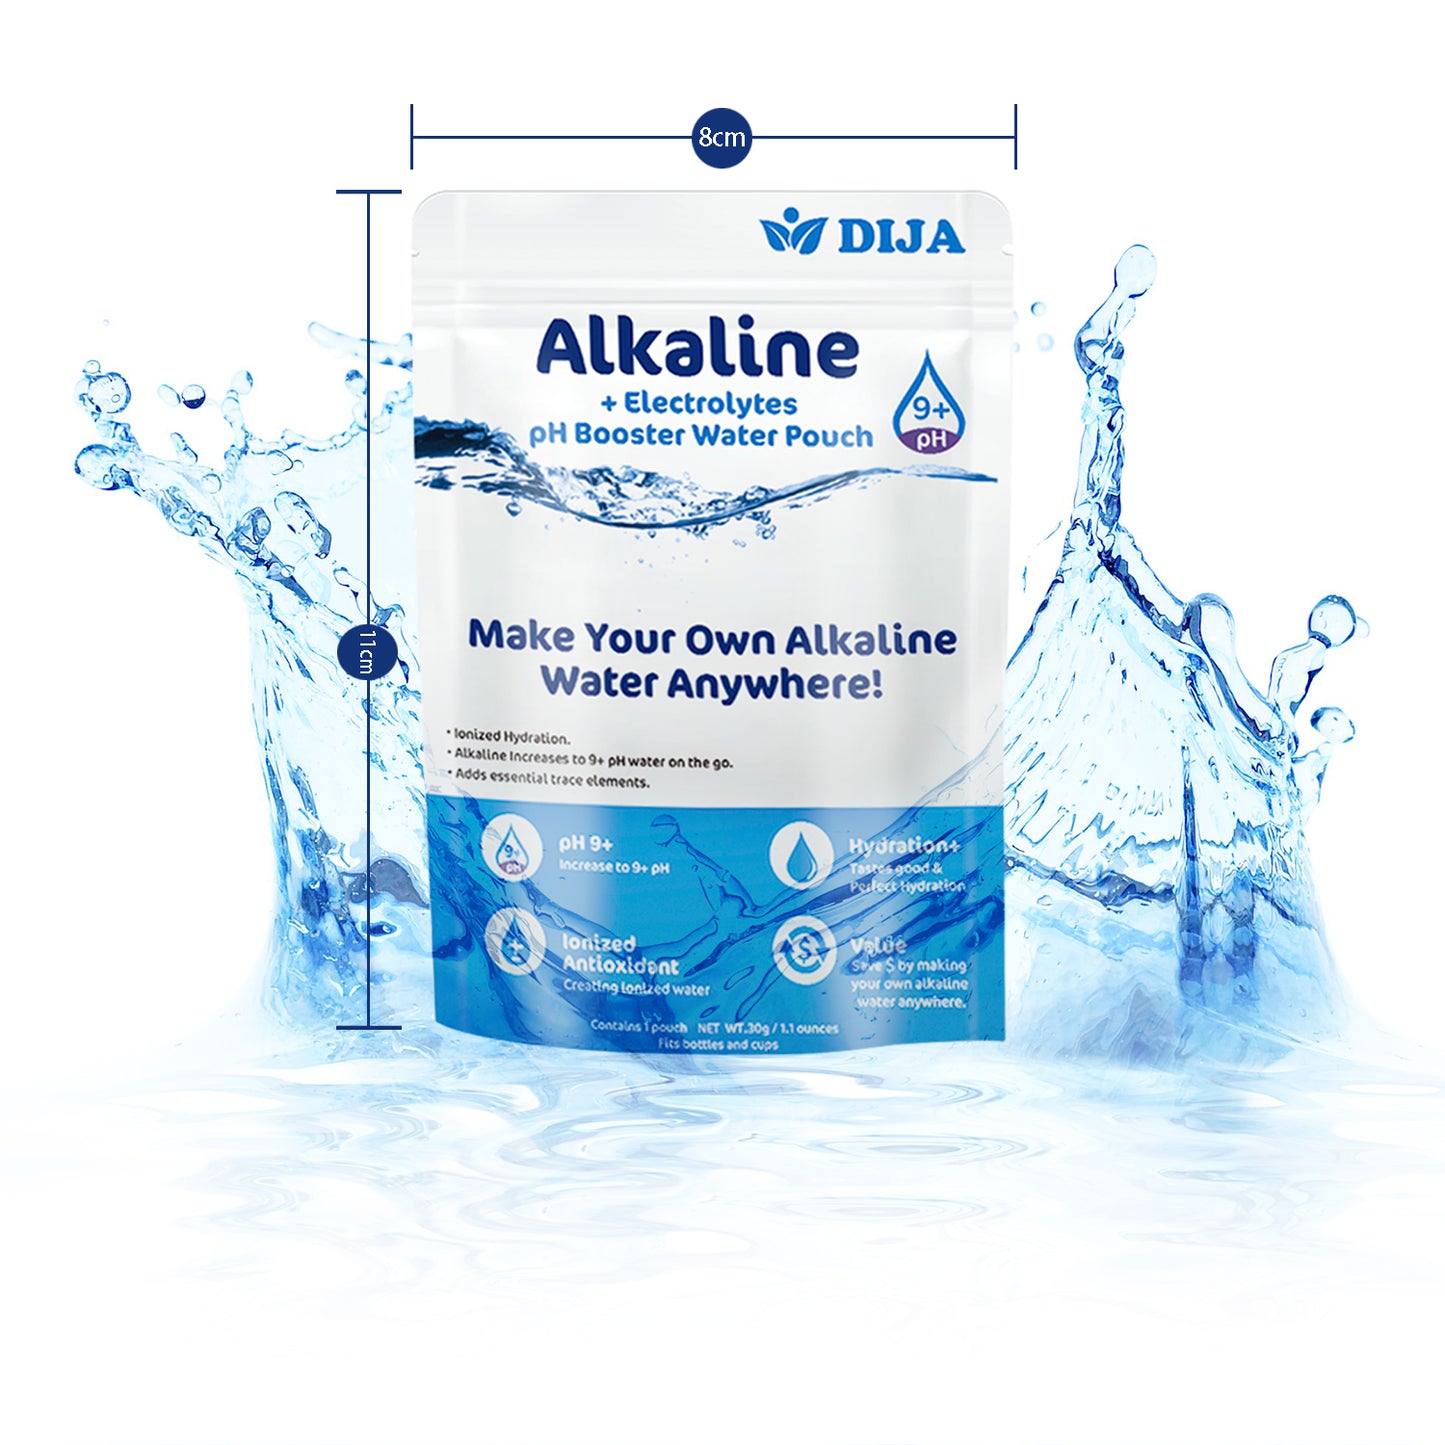 DIJA Alkaline Water Filter Pouch- Long-Life 16 Gallon/72 Litre (5-pack)